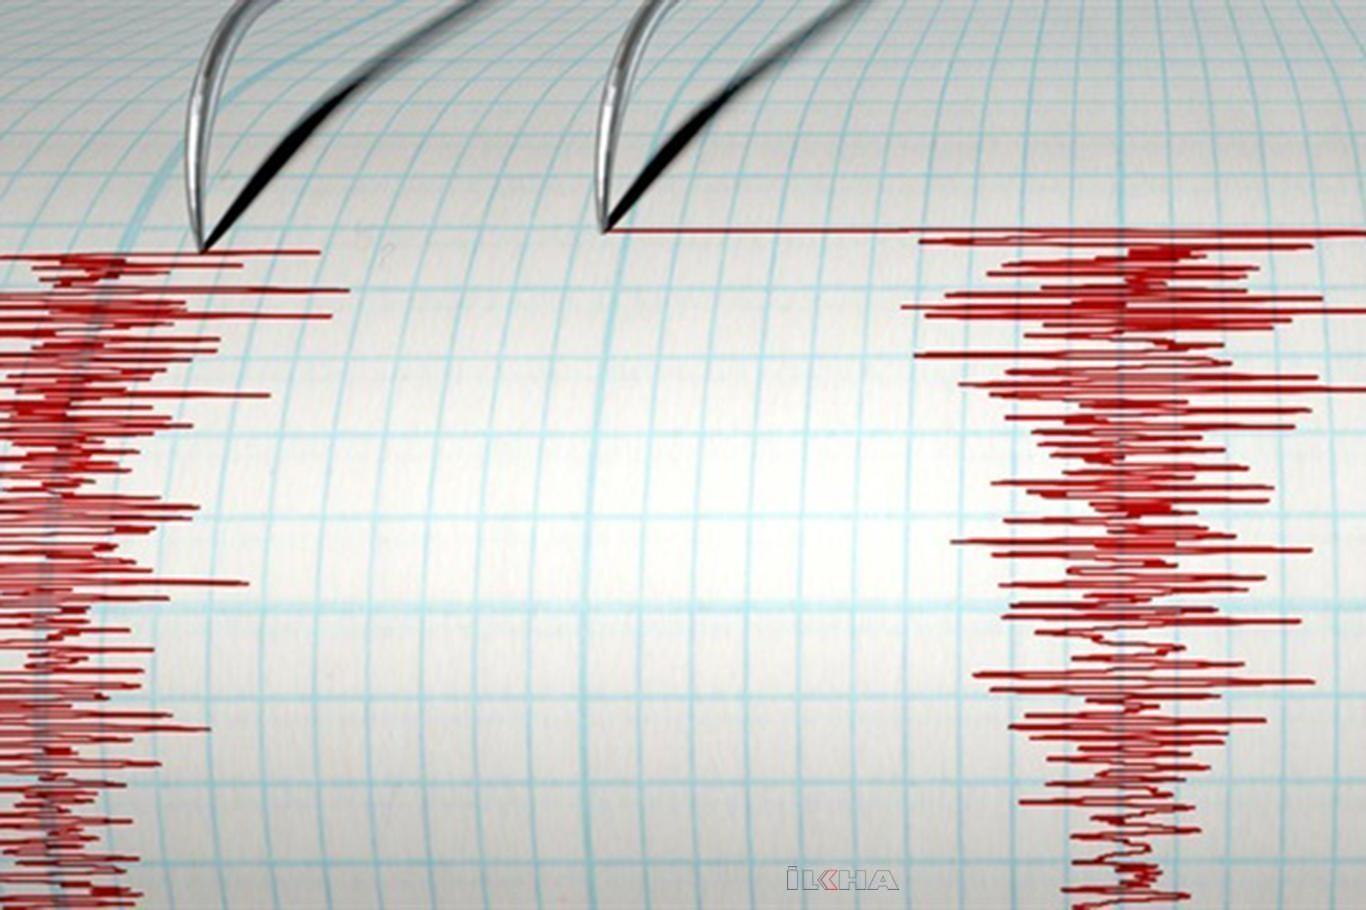 Rusya'da 6.3 büyüklüğünde deprem